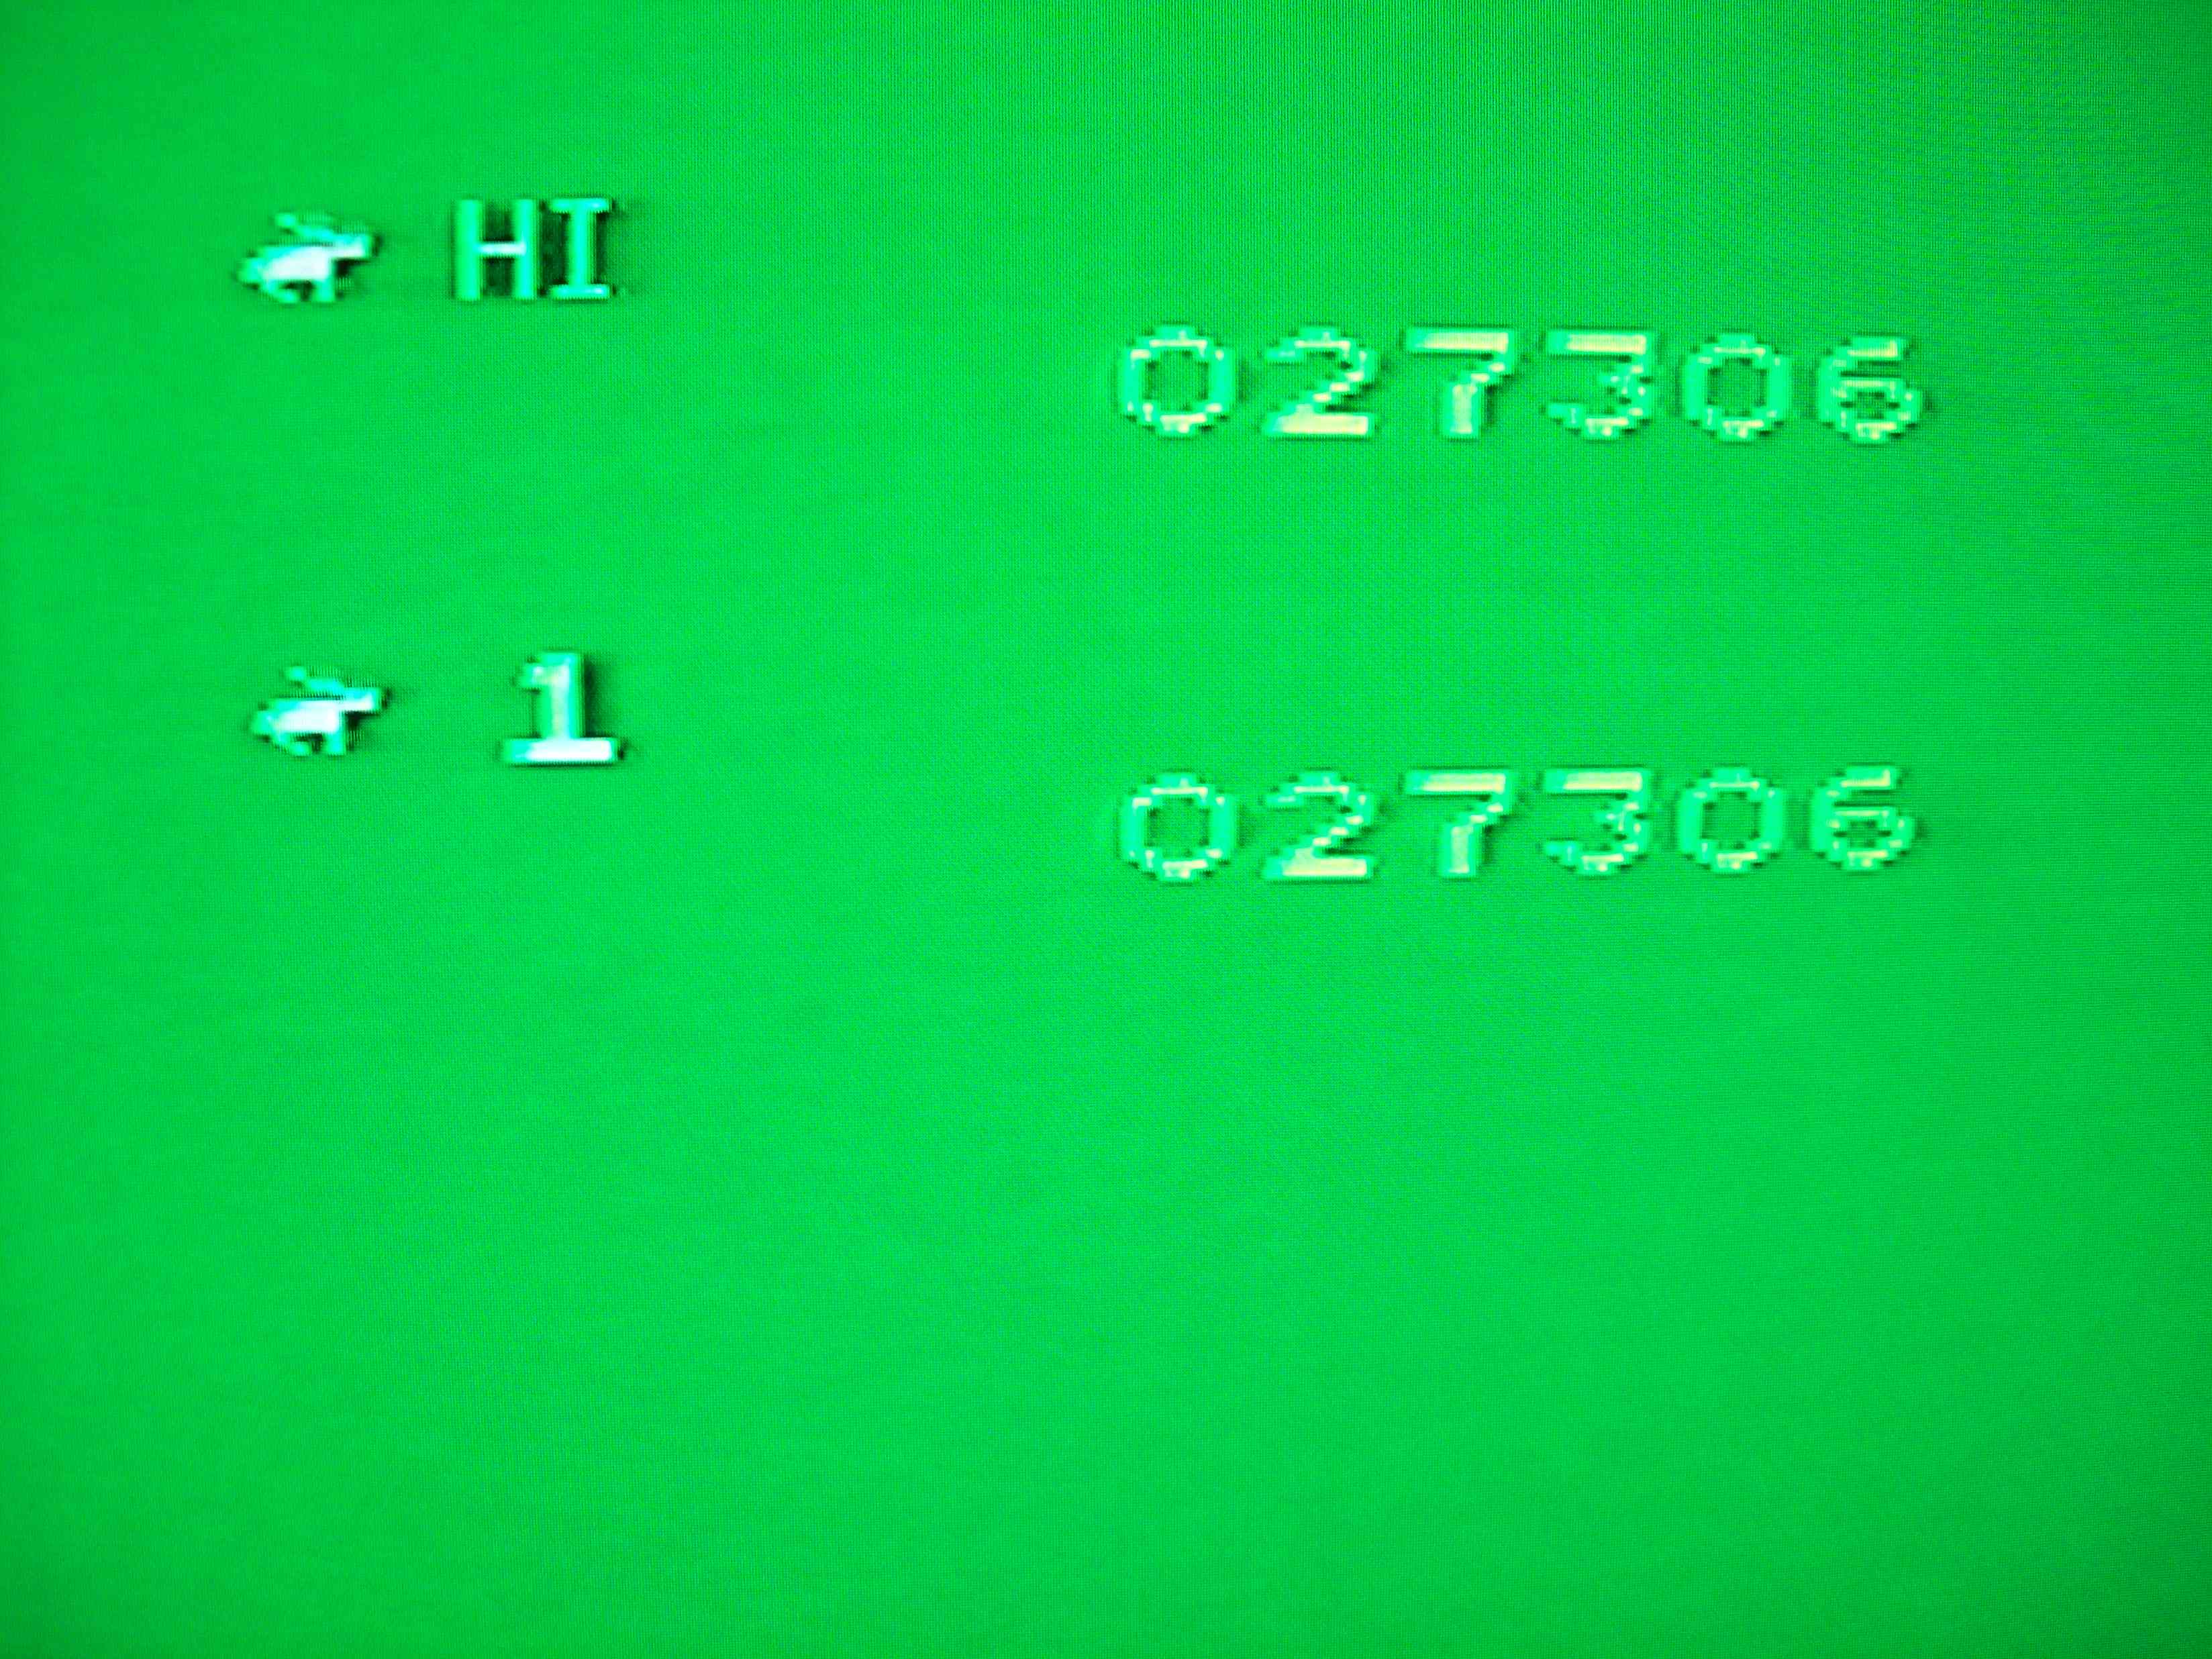 JohnnyTenspeed: Rabbit Transit (Atari 2600 Novice/B) 27,306 points on 2015-03-08 21:02:45